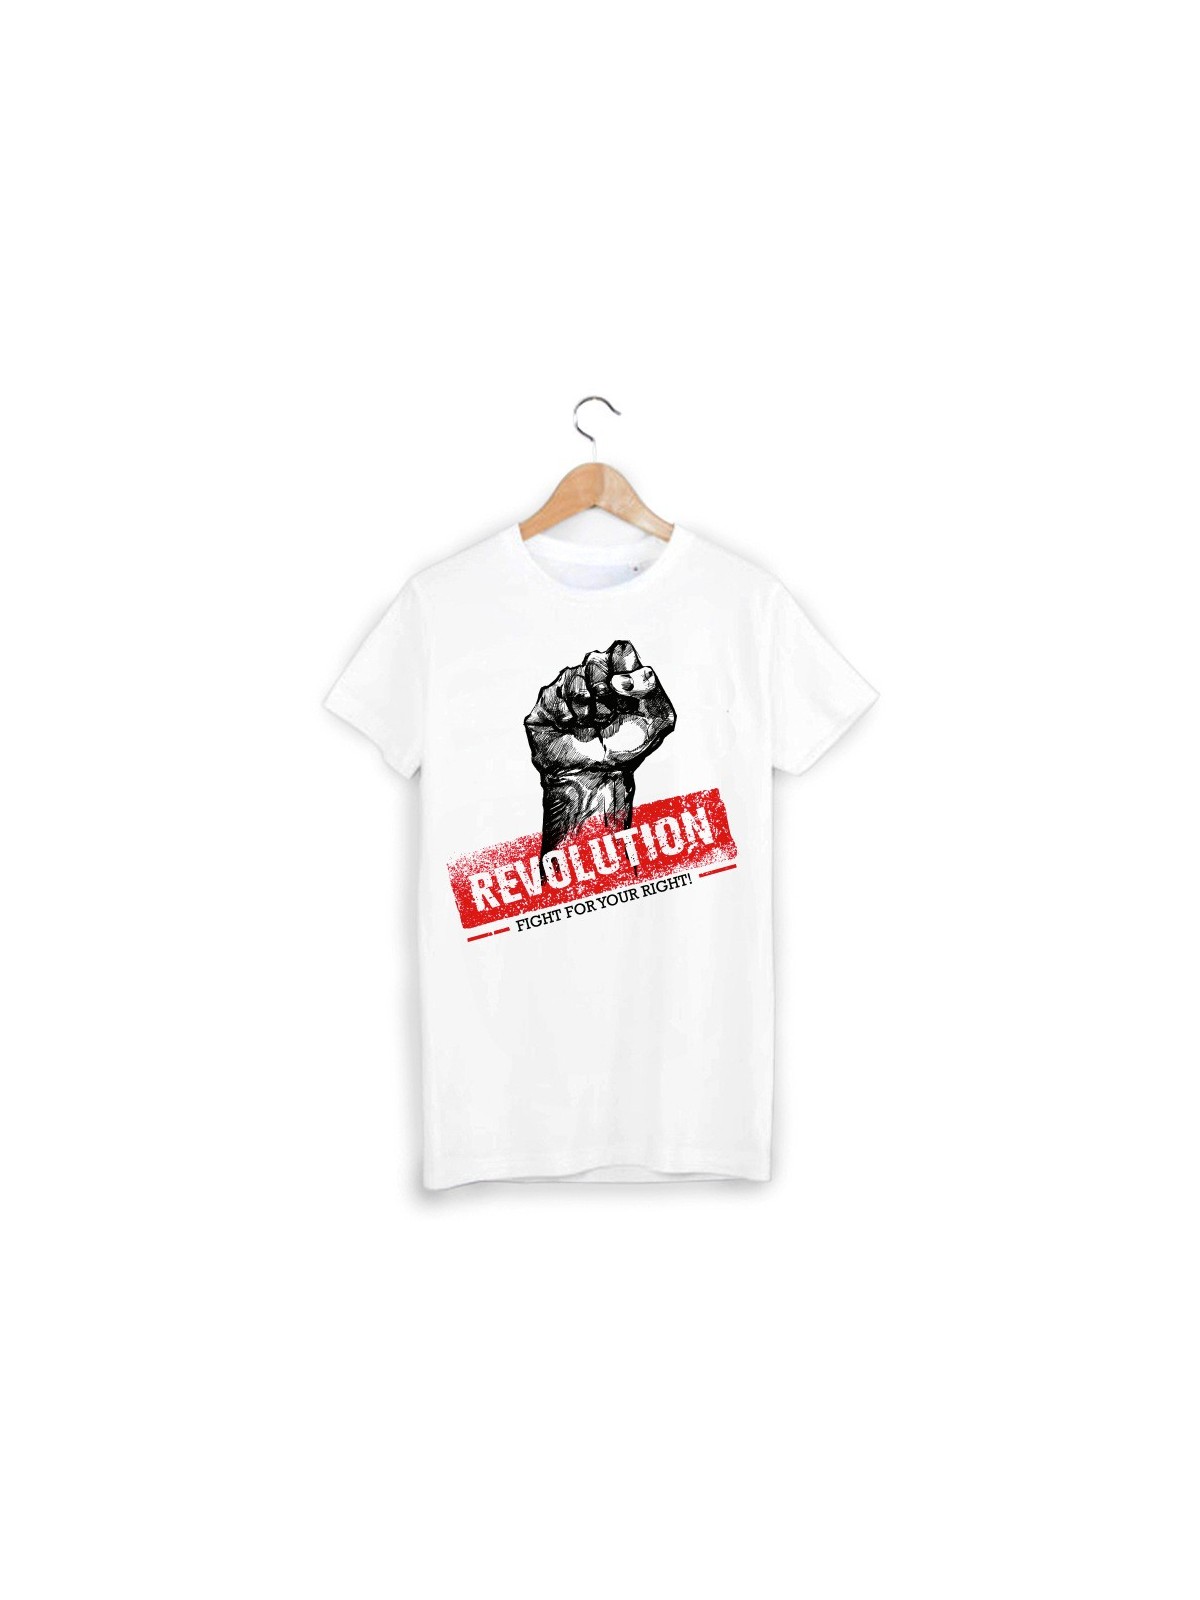 T-Shirt revolution ref 1380